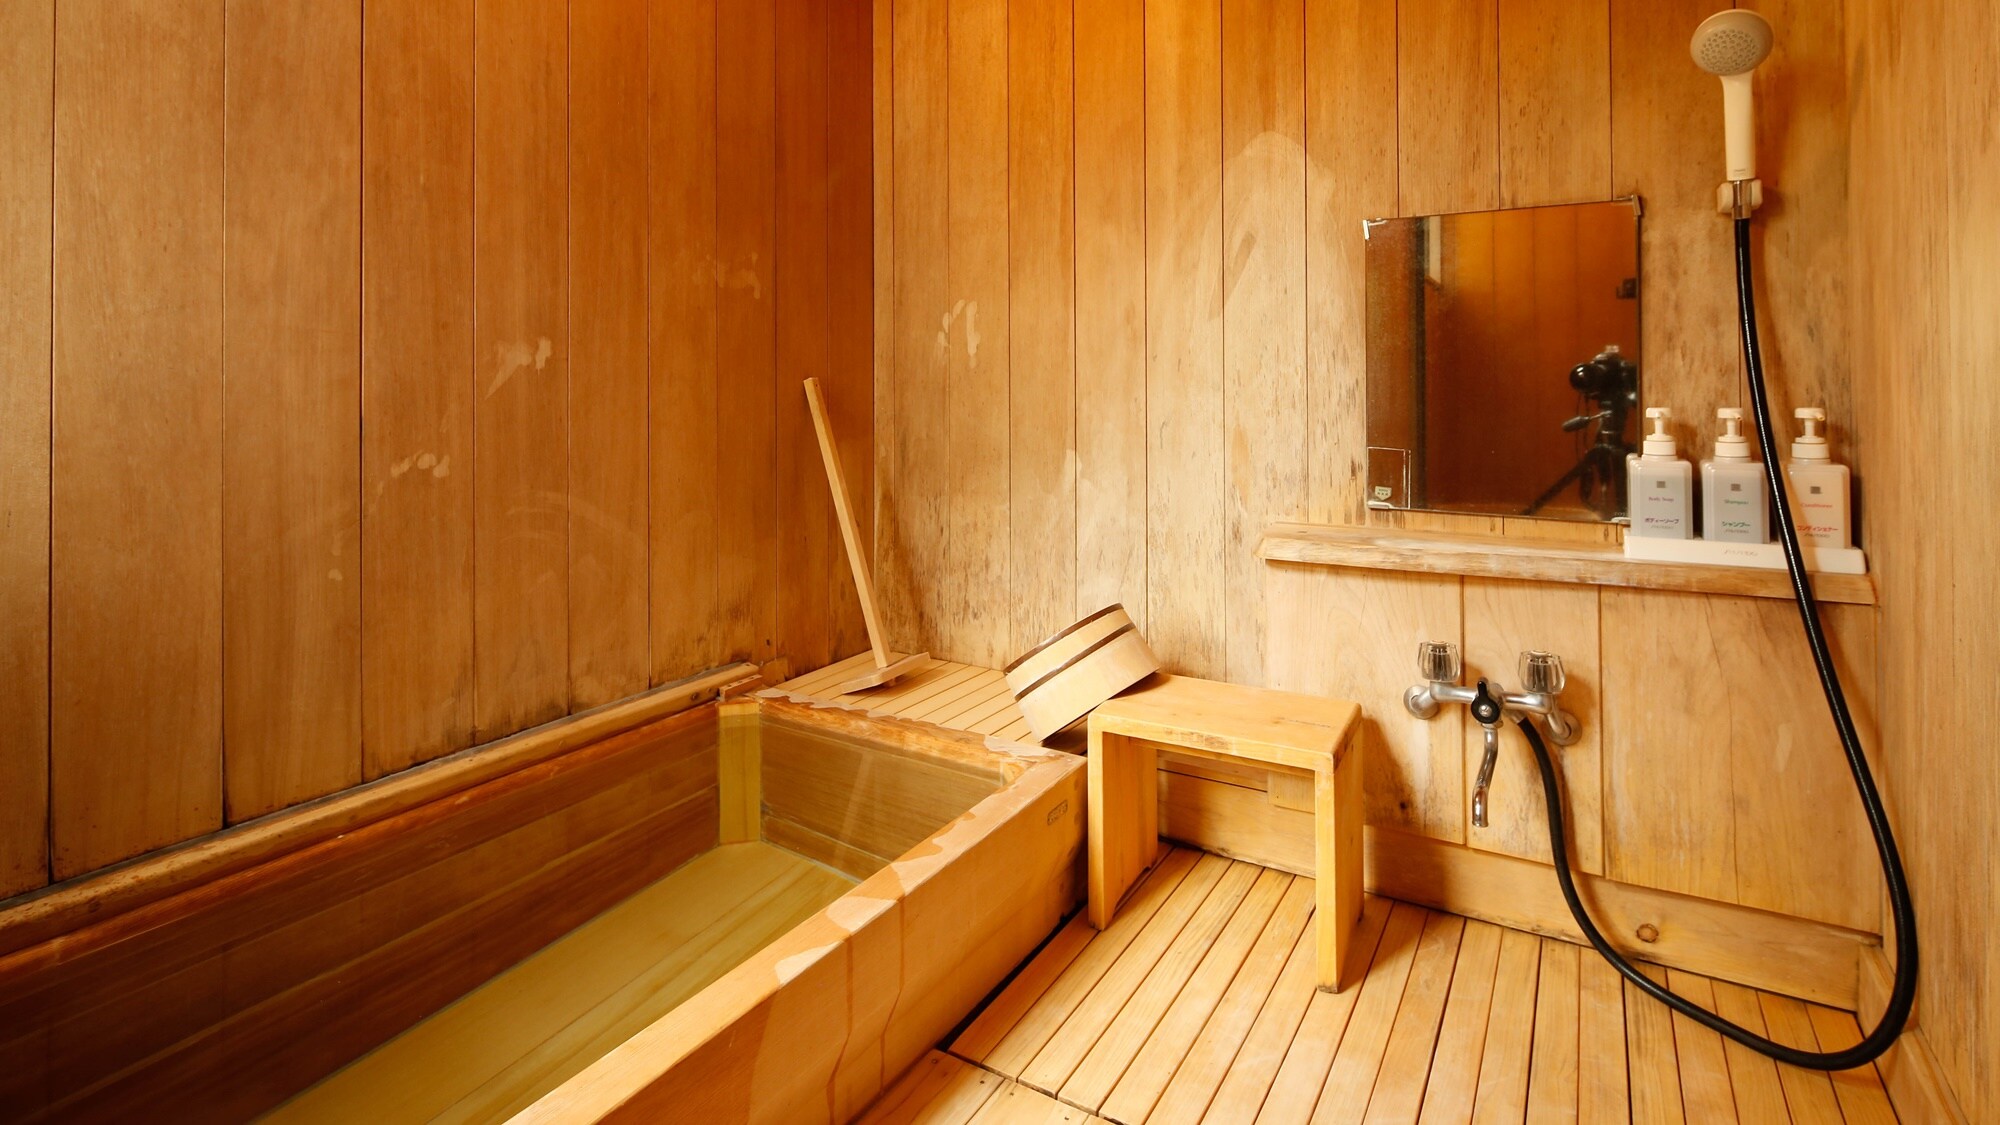 [ปลอดบุหรี่] ห้องสไตล์ญี่ปุ่นขอบกว้าง เสื่อทาทามิ 10 ผืน พร้อมอ่างอาบน้ำไซเปรส